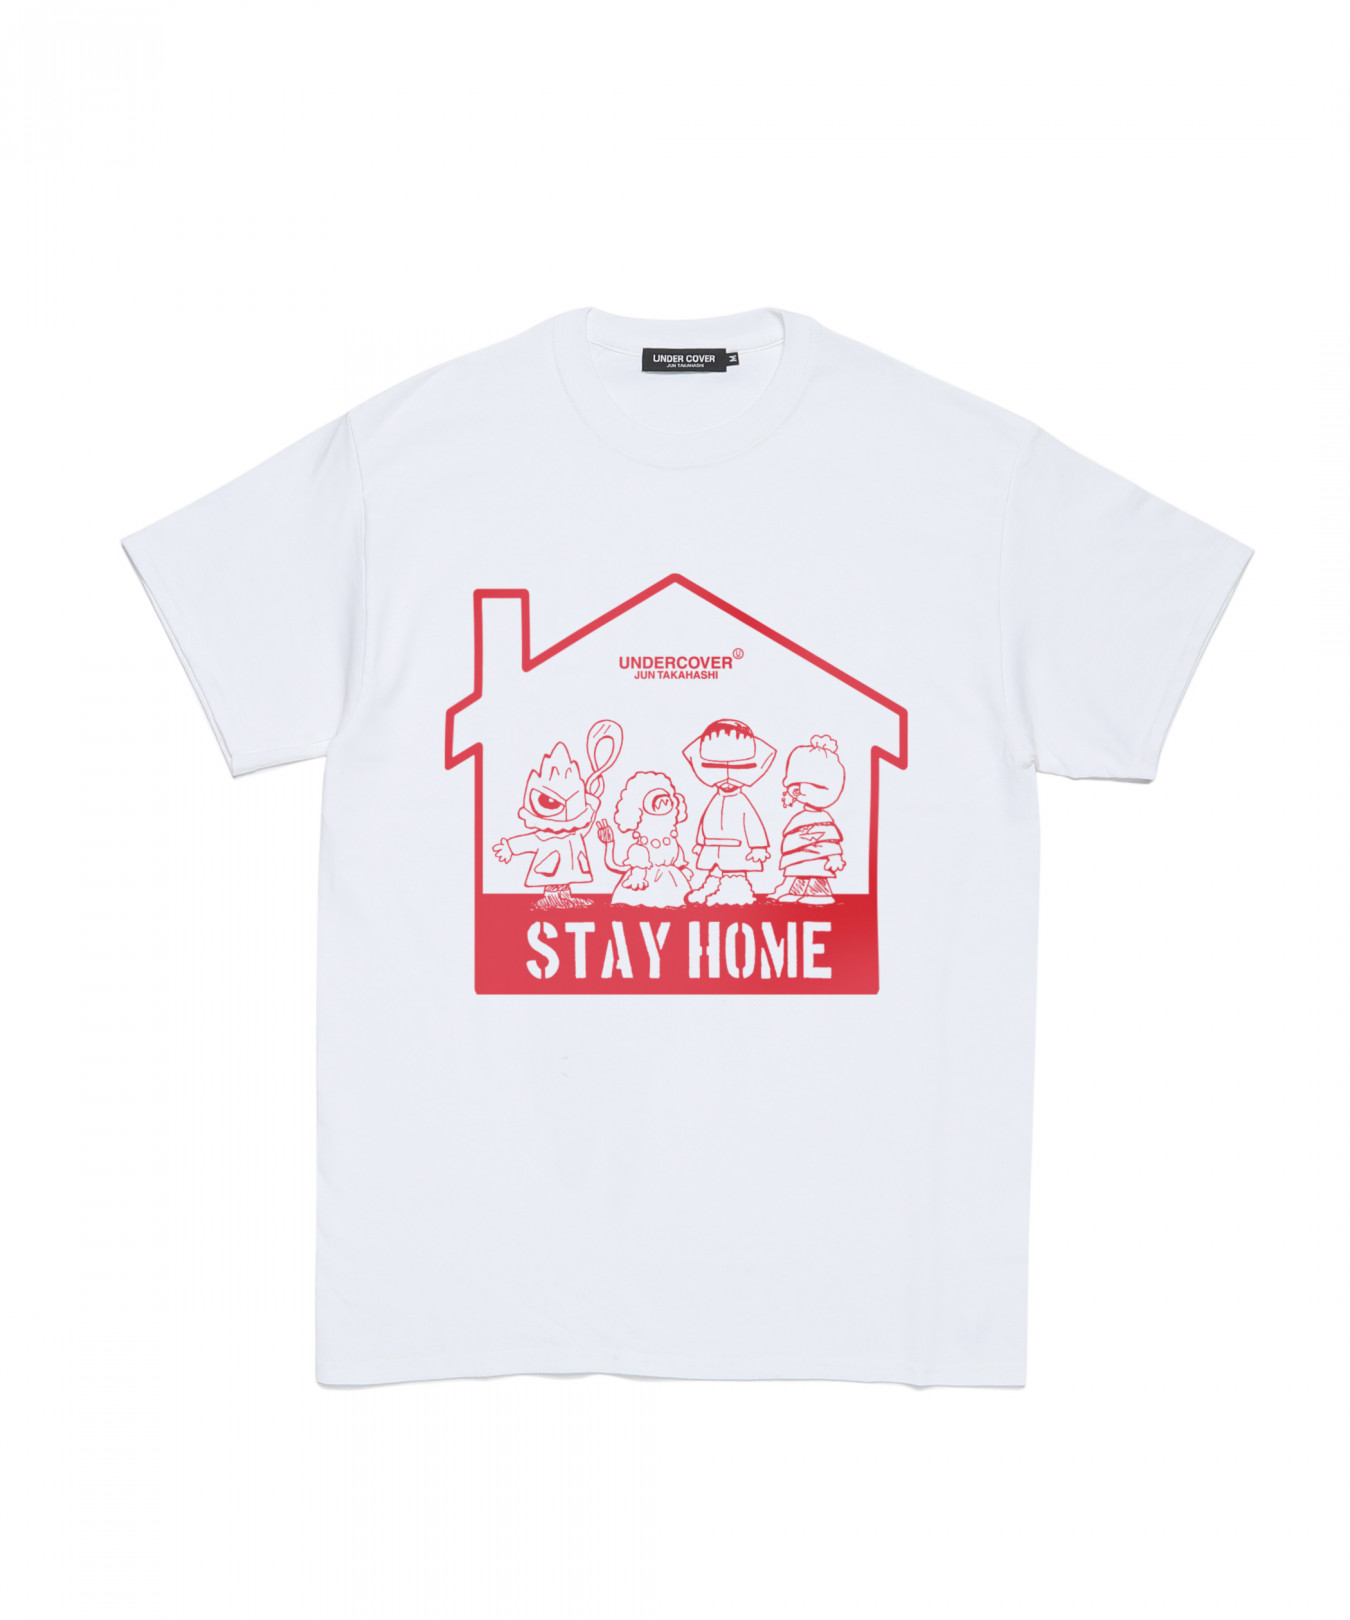 3日間限定! アンダーカバーがオンライン受注限定Tシャツを発売、”STAY SAFE” ”STAY HOME”のメッセージに注目